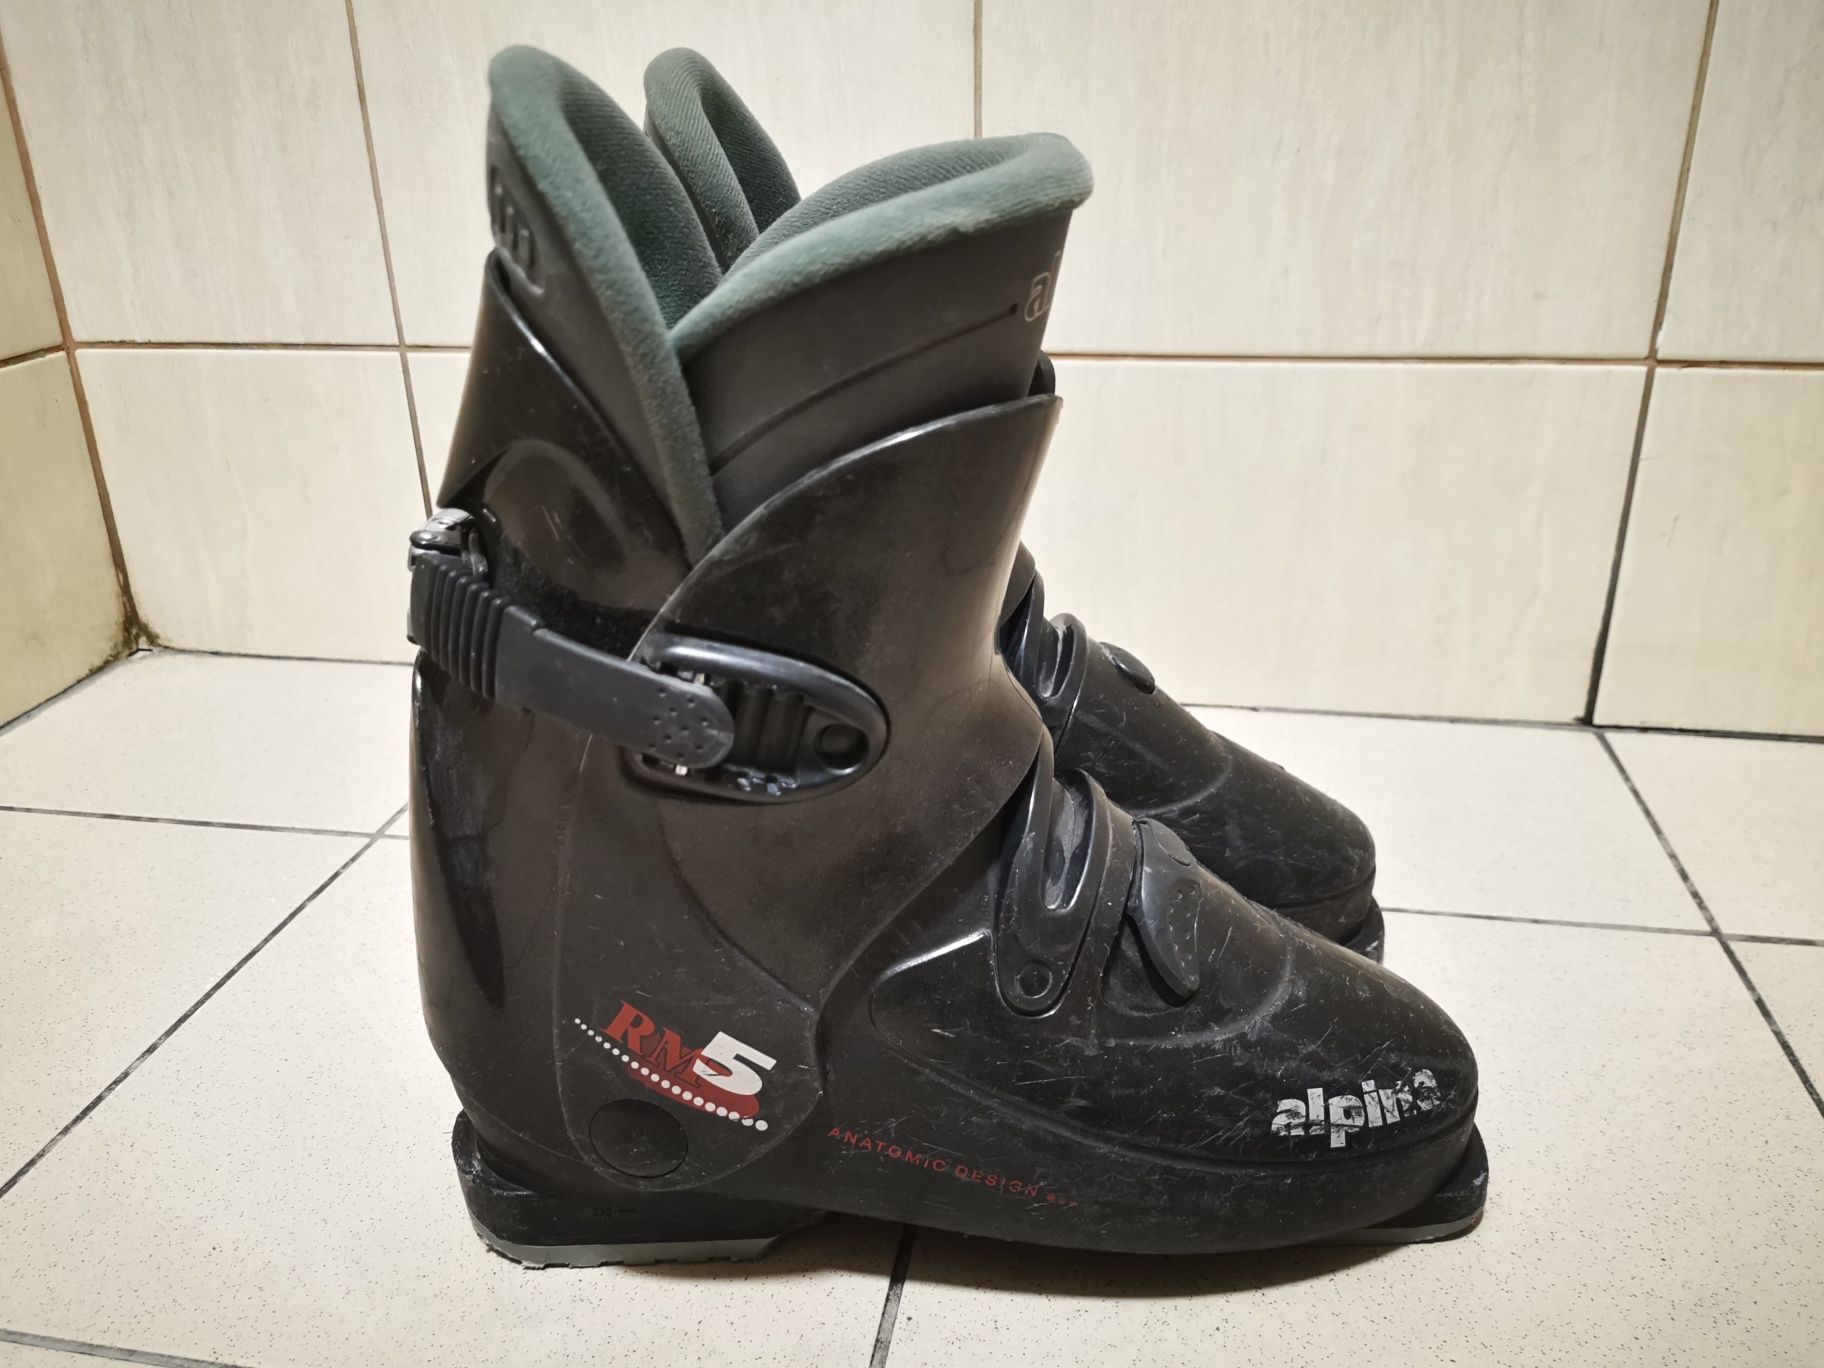 Buty narciarskie Alpina RM5 r. 41